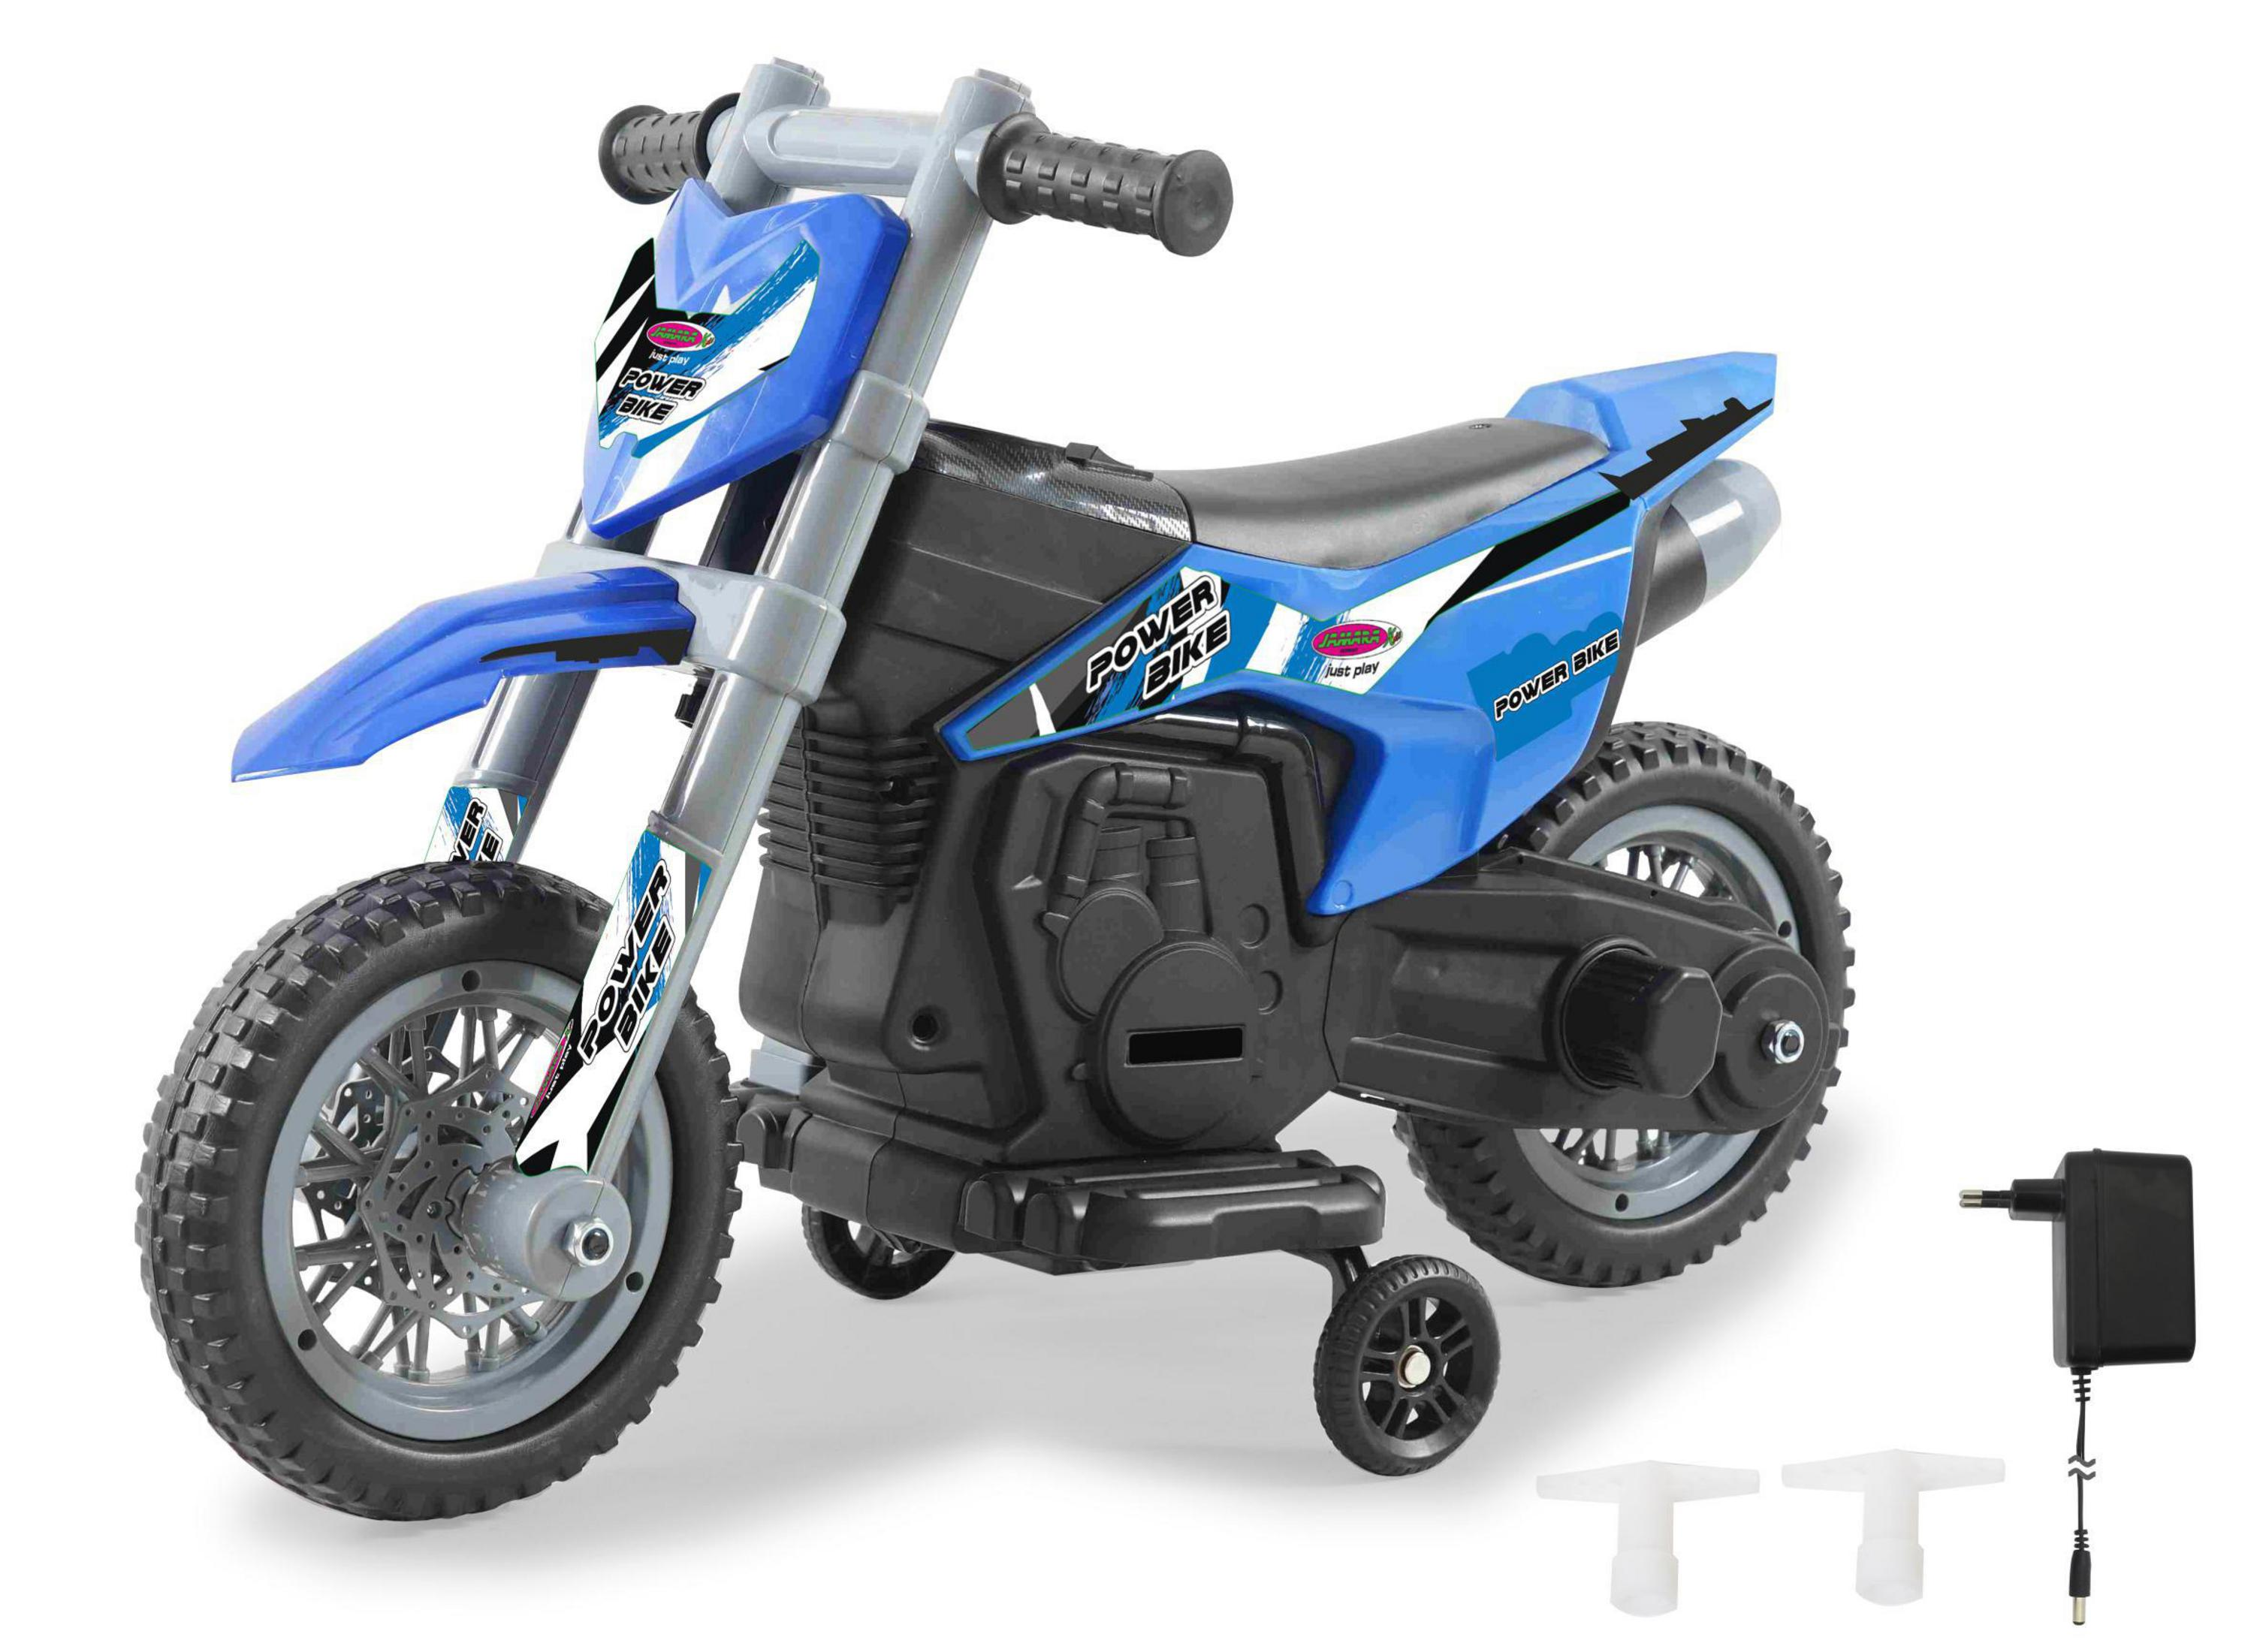 JAMARA RIDE-ON 460678 BLAU Ride-On POWER BIKE Kinderfahrzeug, 6V MOTORRAD Blau